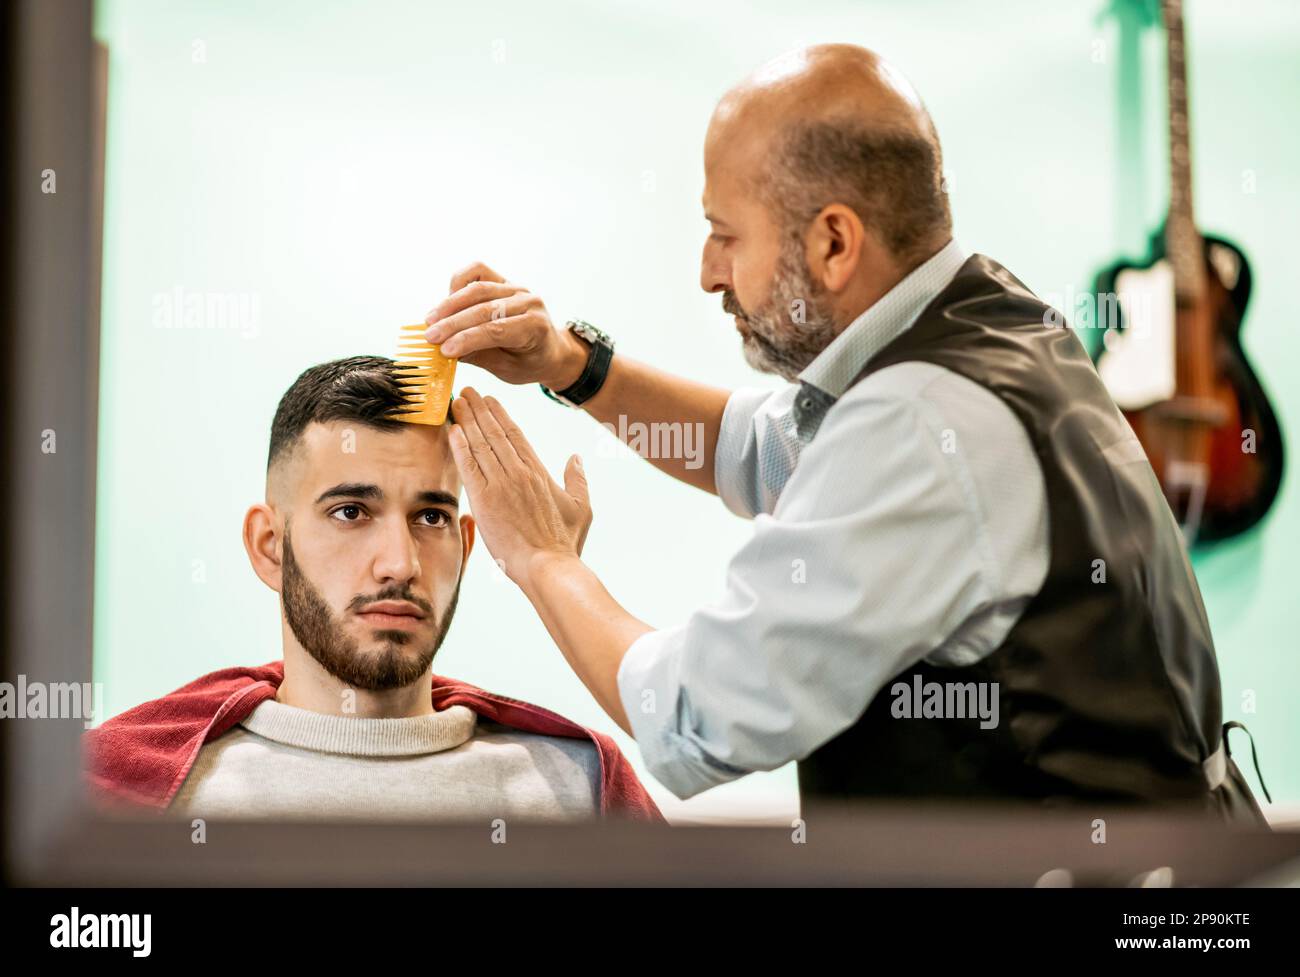 Im Spiegel sehen Sie einen konzentrierten Barbier, der seine Gäste mit dunklem Haar und gelbem Kamm kämmt Stockfoto